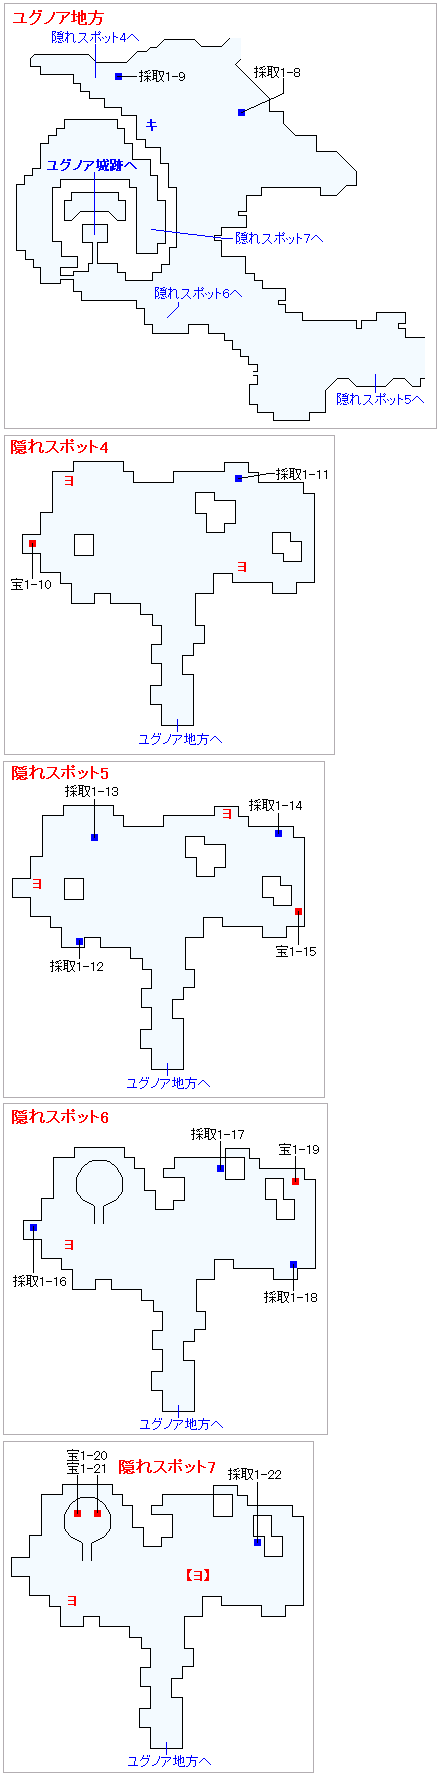 2Dモードのストーリー攻略マップ・ユグノア地方（1）